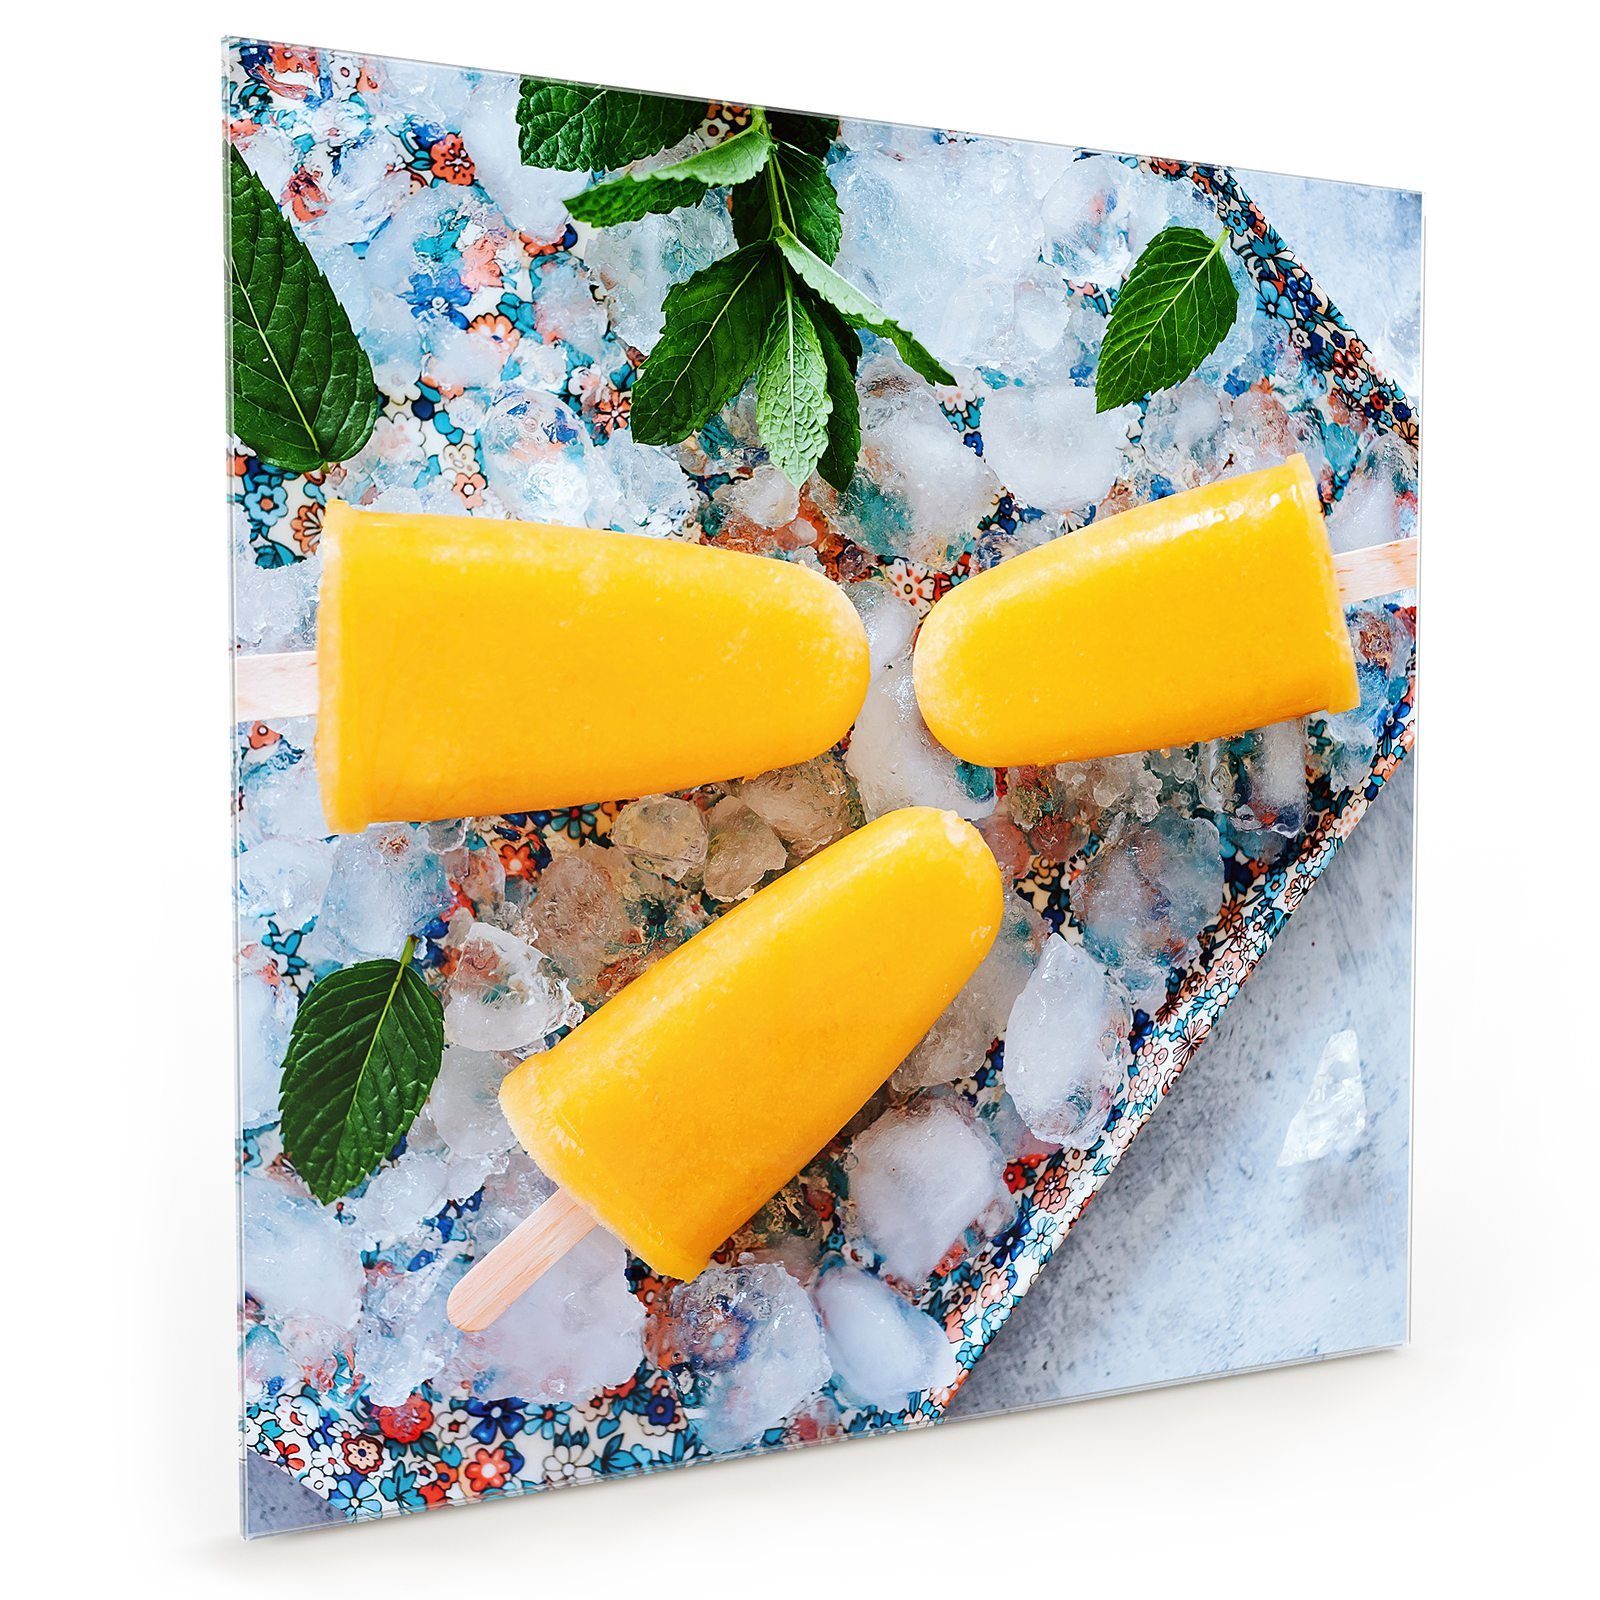 Primedeco Küchenrückwand Küchenrückwand Spritzschutz Bananen Mango Glas Eis Motiv mit